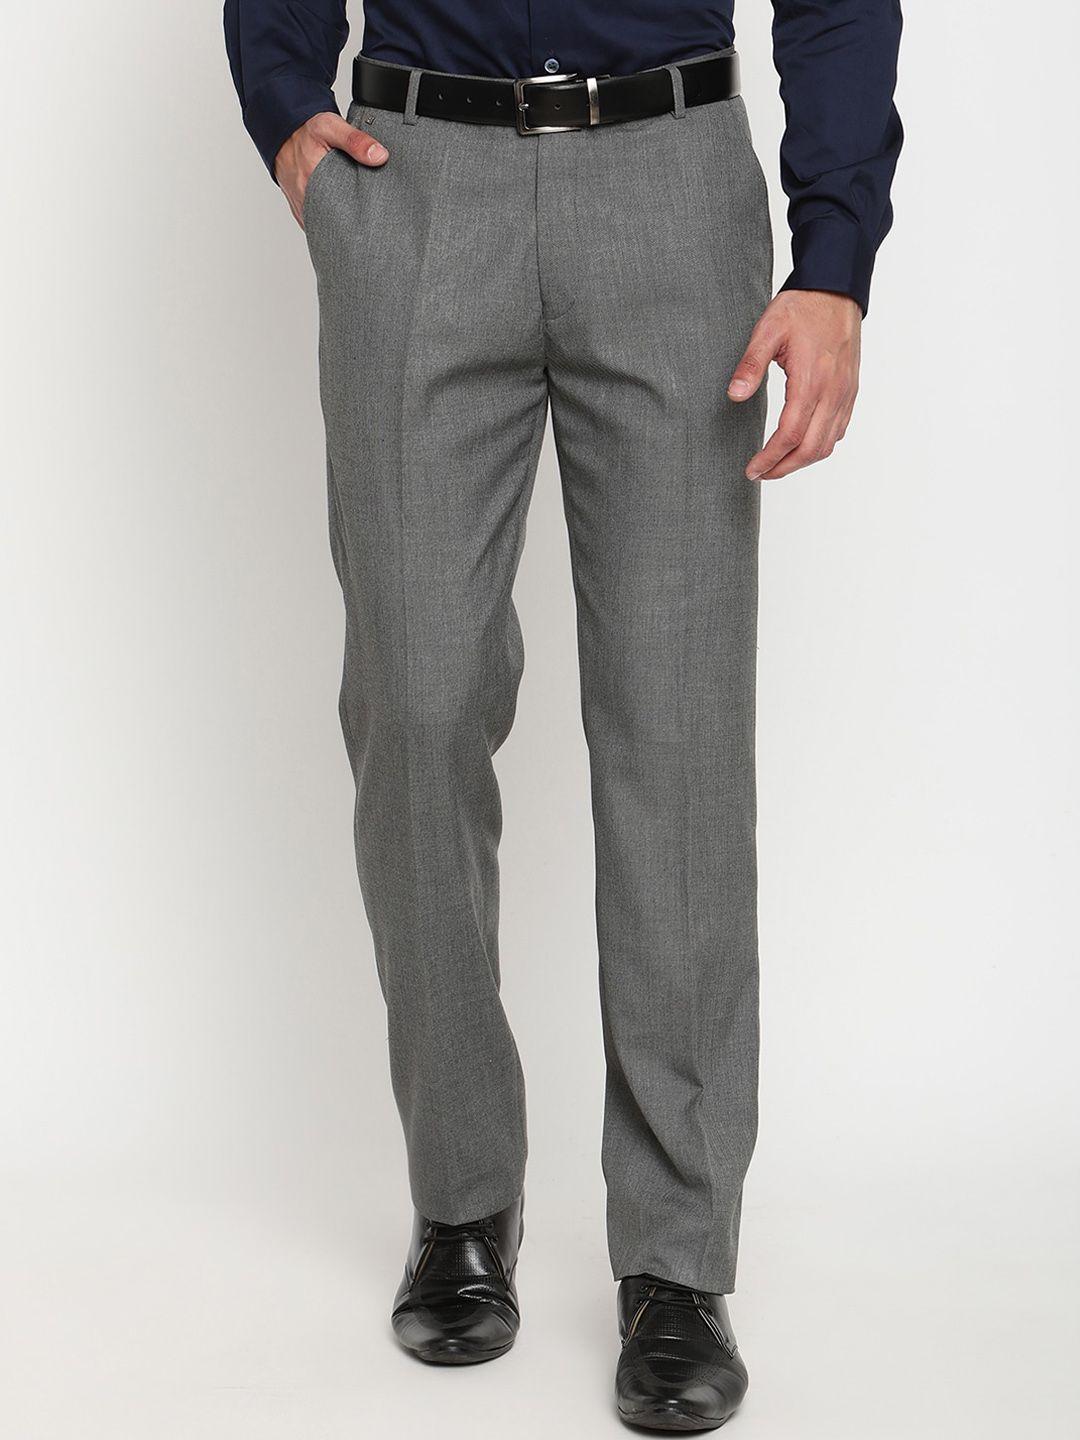 cantabil men grey original trousers